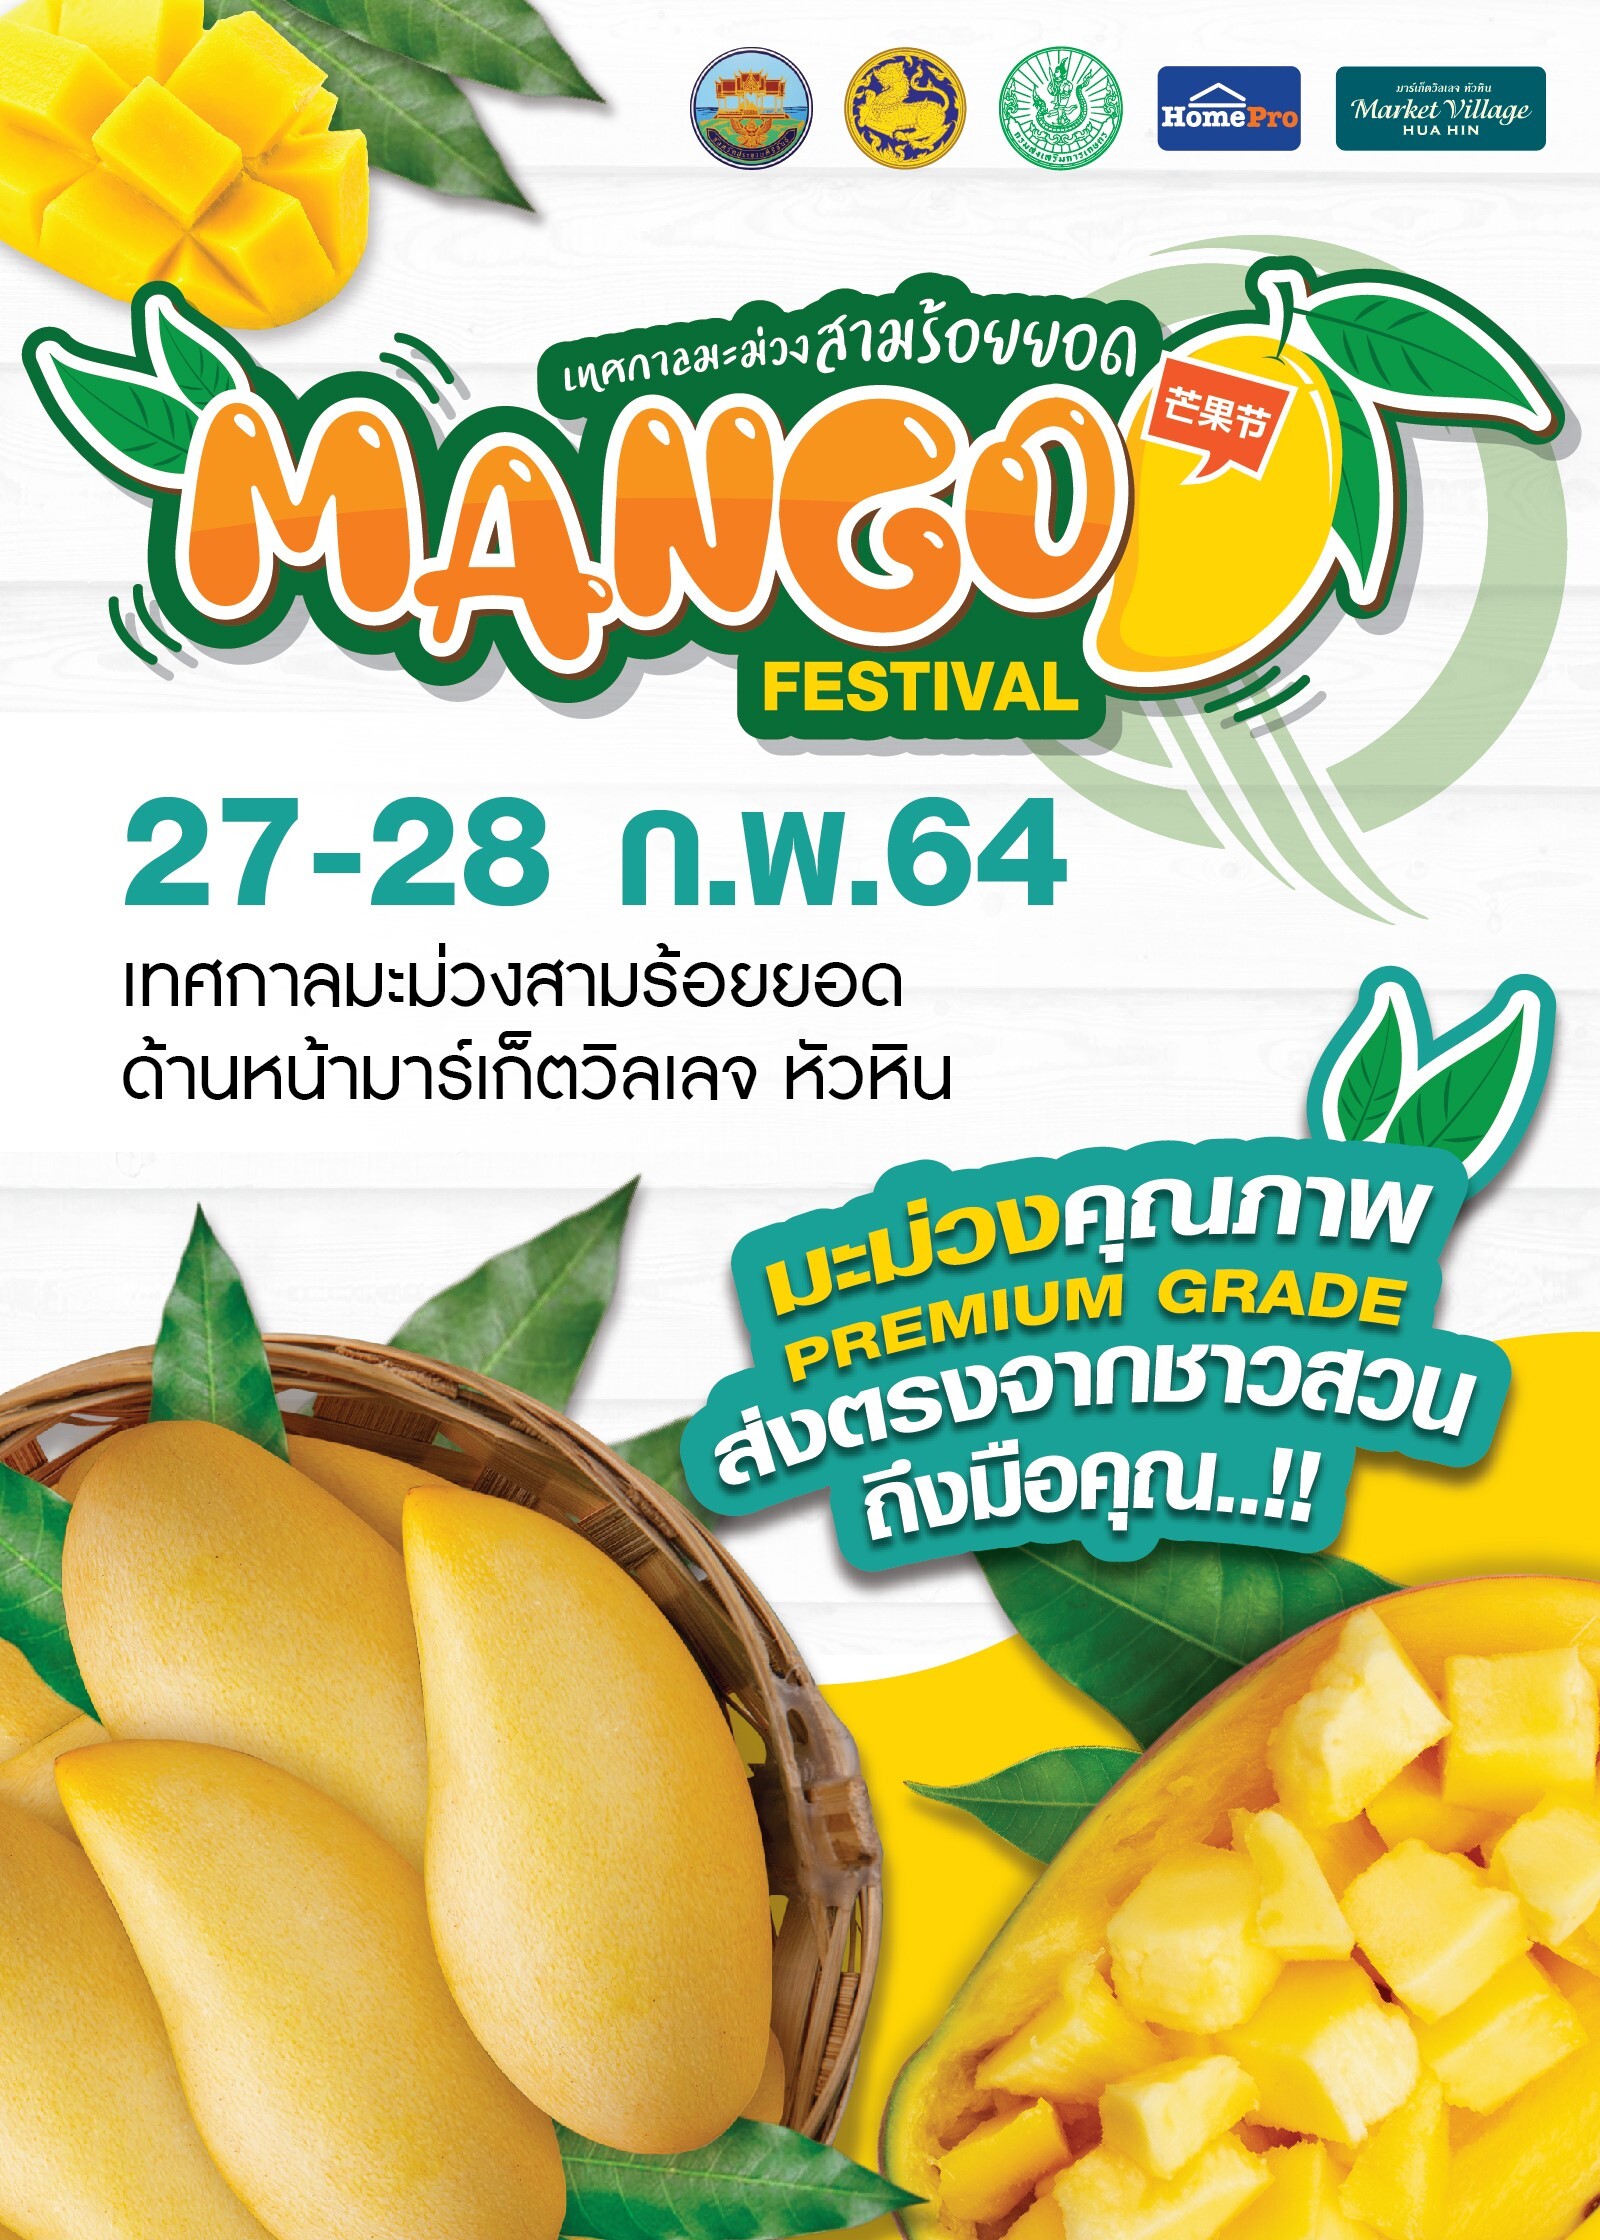 Mango Festival เทศกาลมะม่วงสามร้อยยอด ครั้งที่ 1